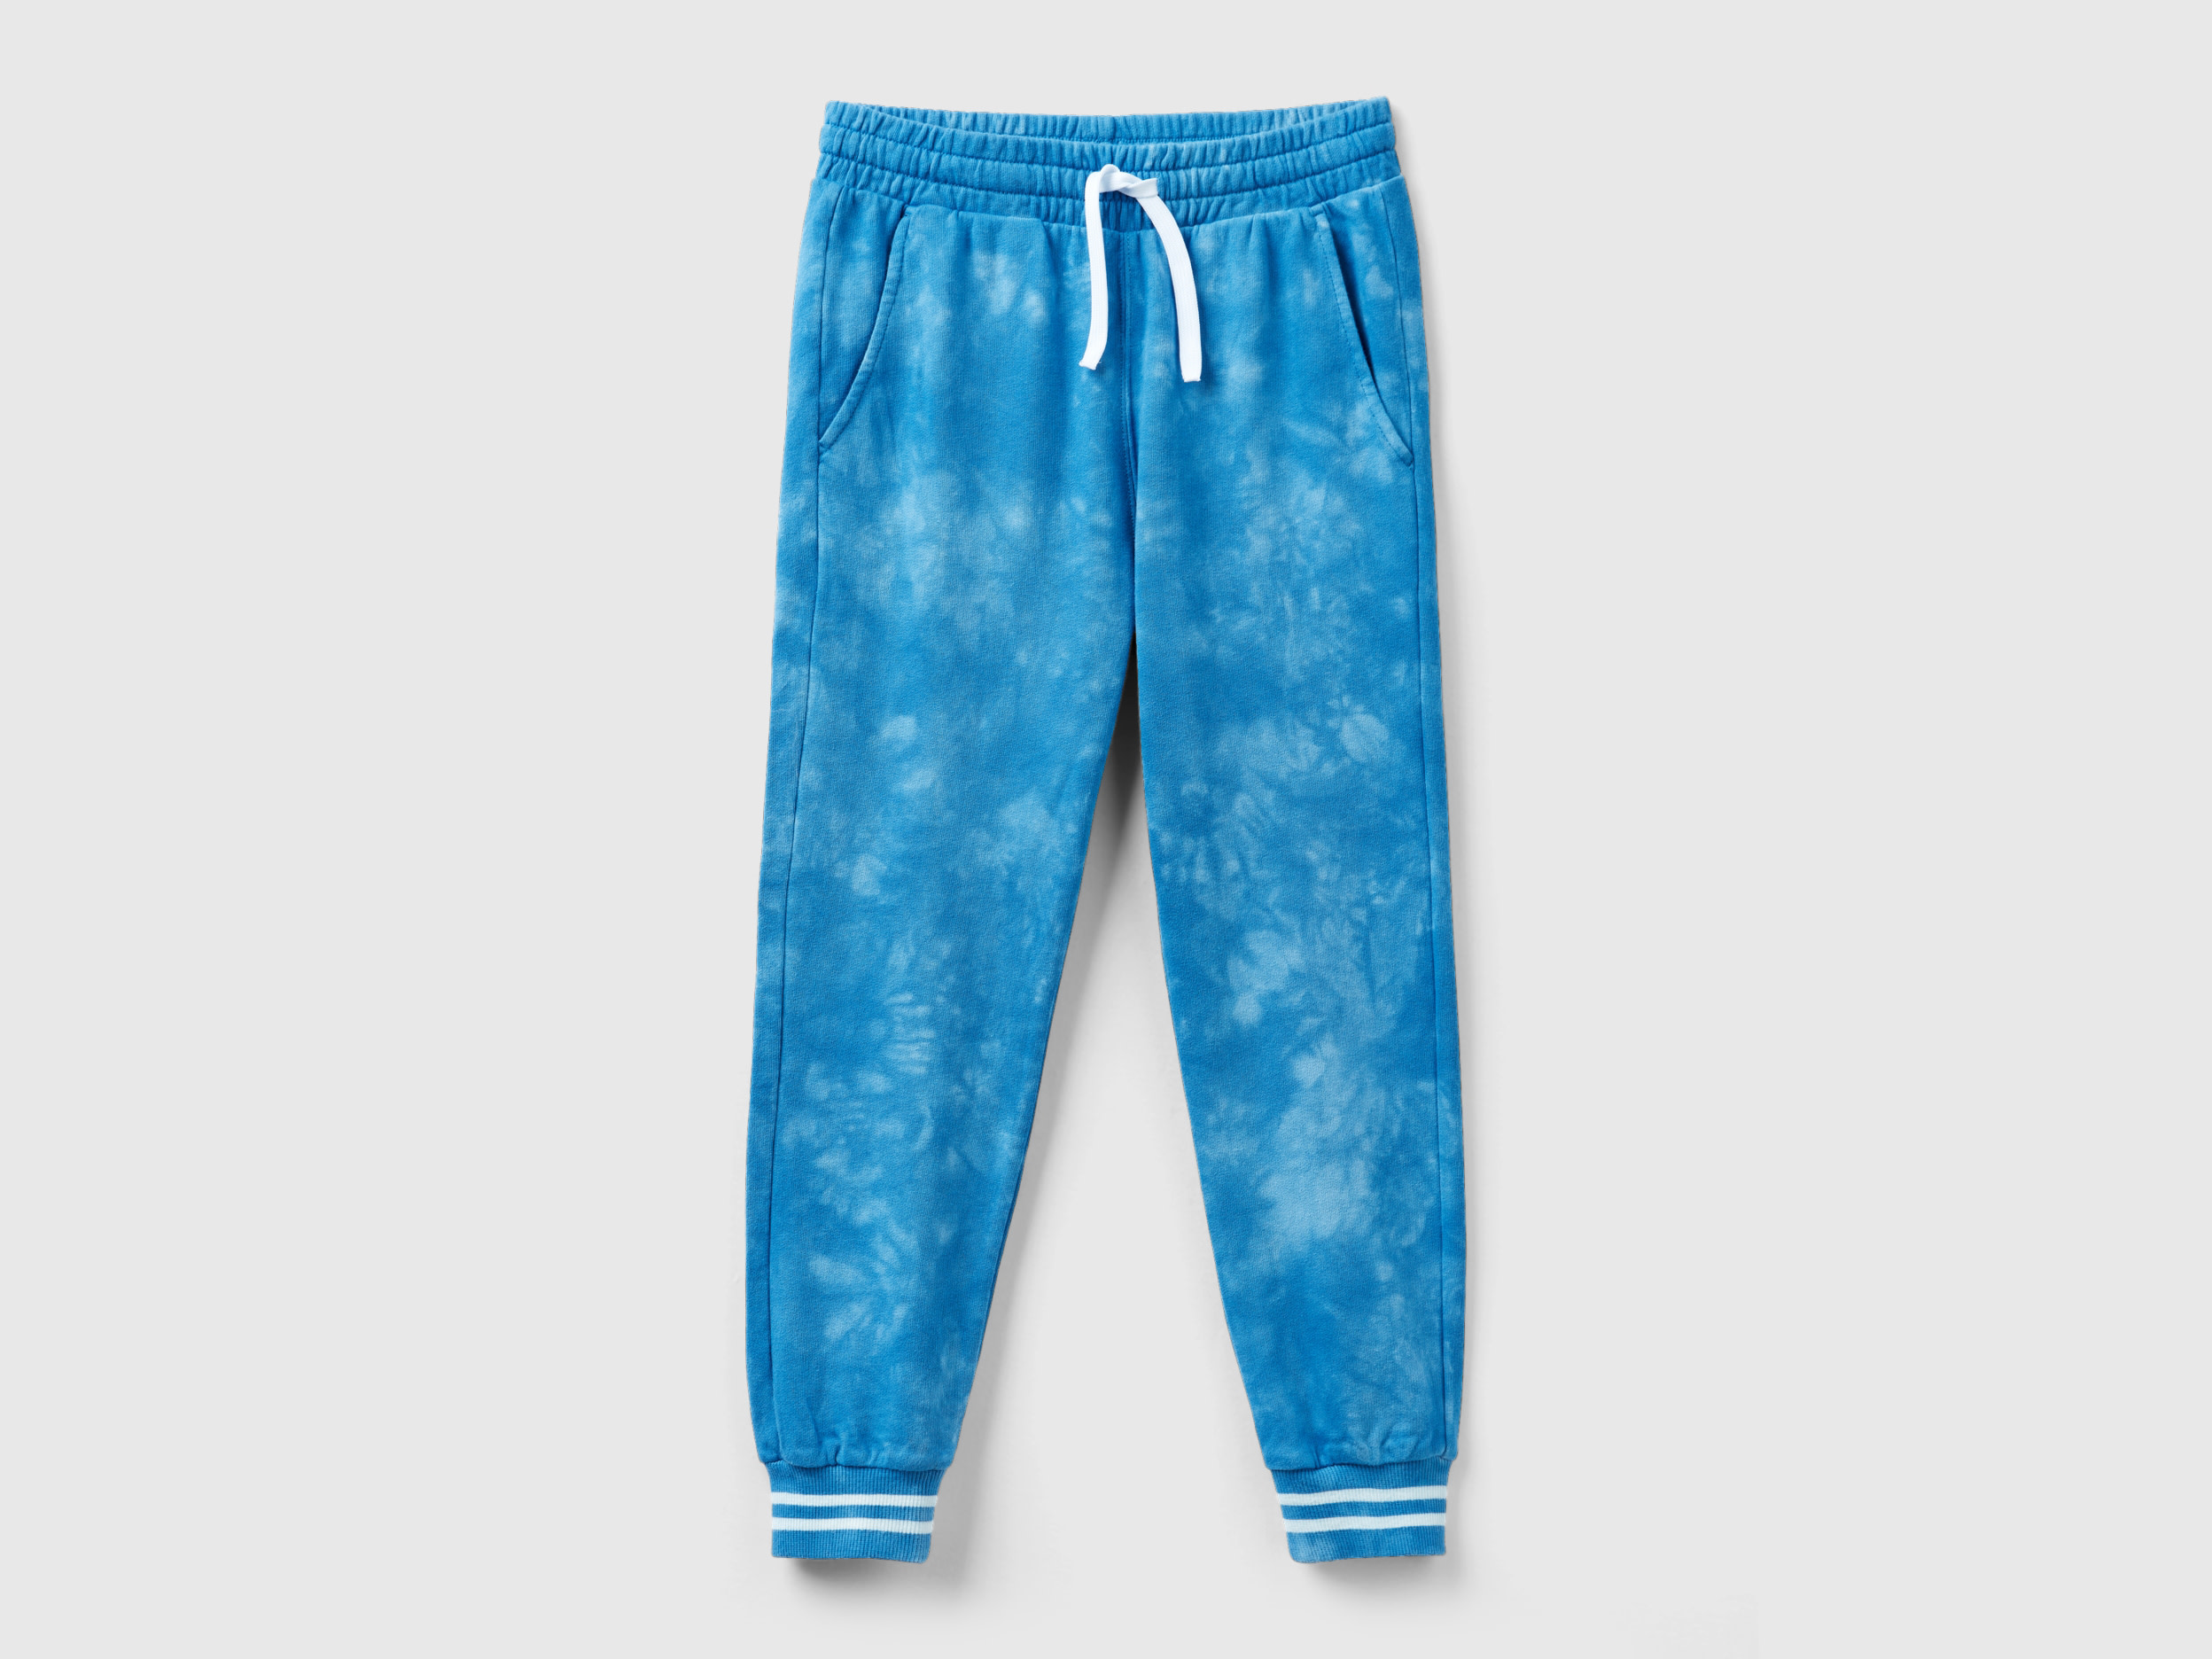 Benetton, Tie-dye Sweatpants, size M, Light Blue, Kids